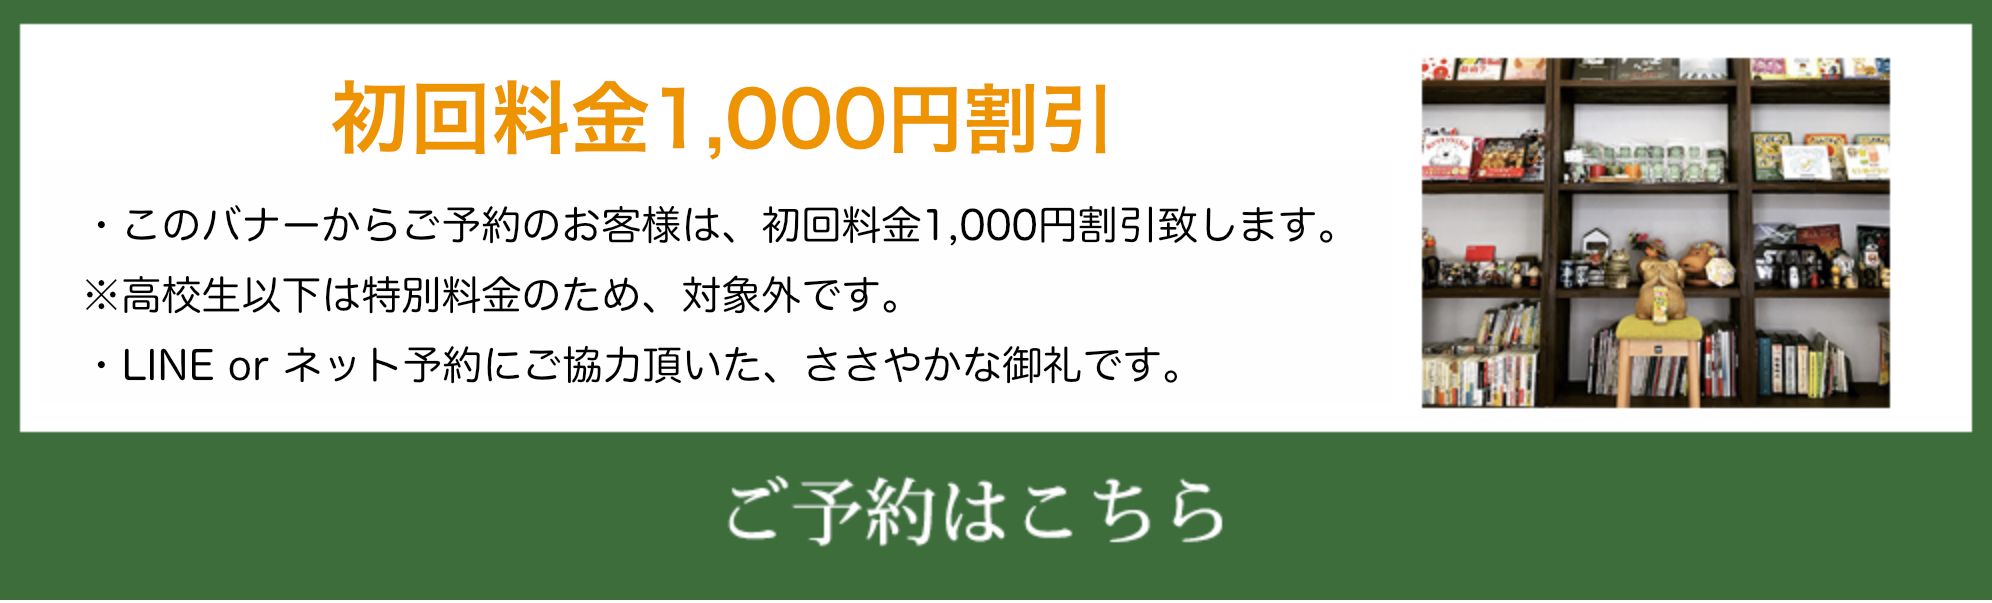 初回料金1,000円割引